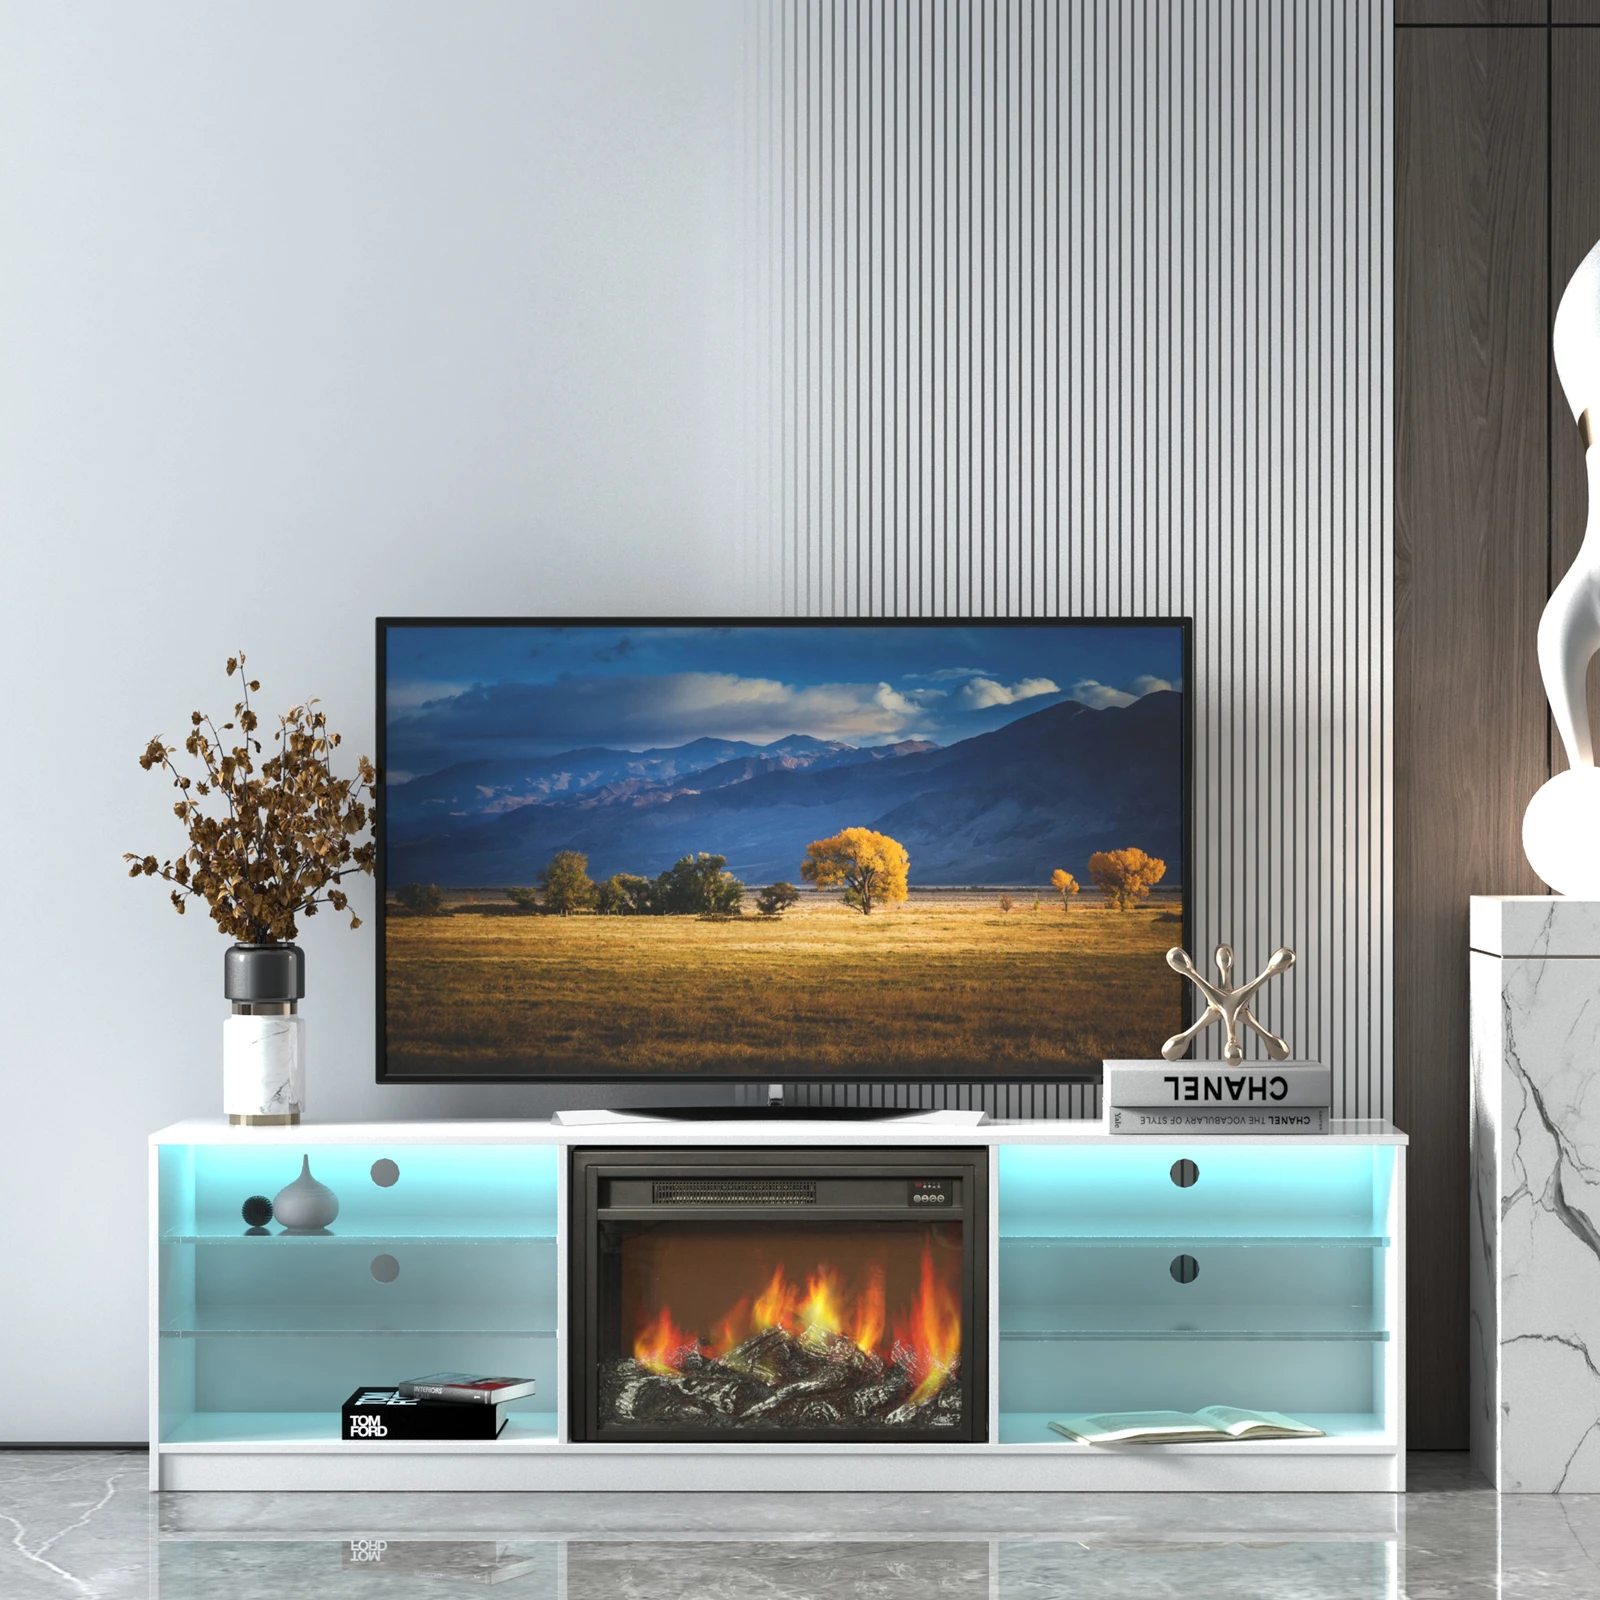 Домашний декор регулируемые светодиодные лампы с эффектом пламени дистанционное управление Подставка для телевизора электрический камин консоли Современные камины декор для двери камина